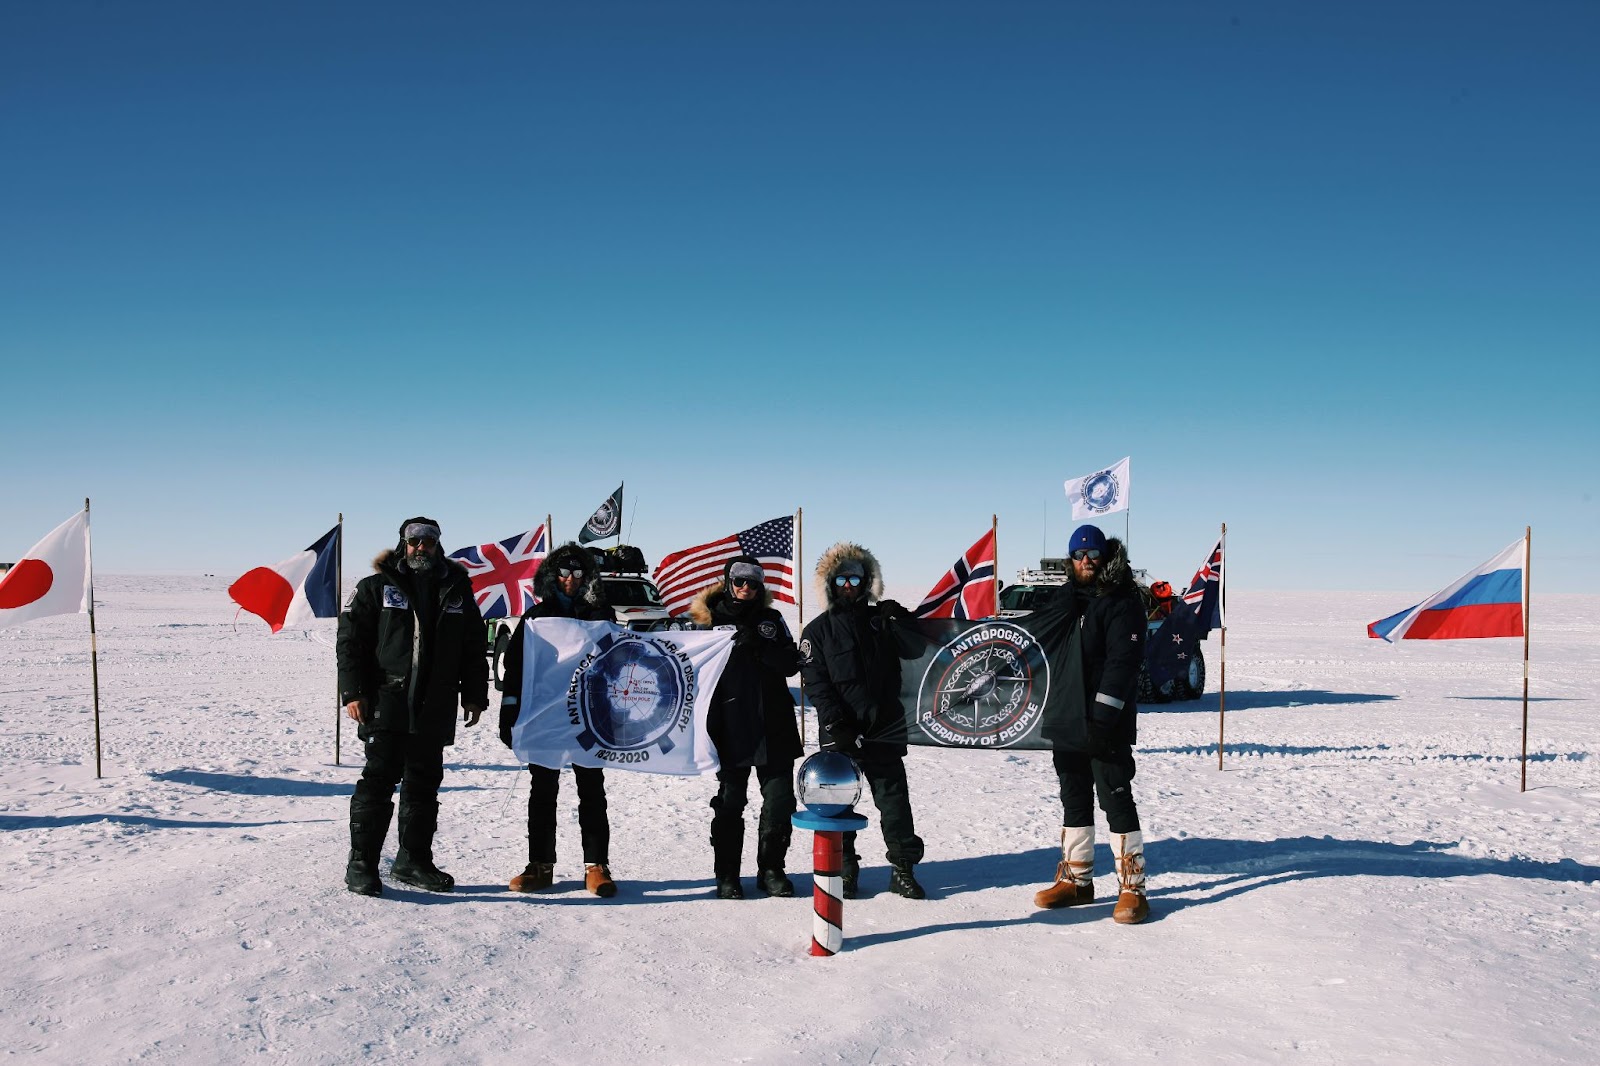 Экспедиция проекта “Антропогеос” в сезоне 2019-2020 на Южном полюсе. Руководитель экспедиции — Сардар Сардаров, главный редактор “Антропогеос”.